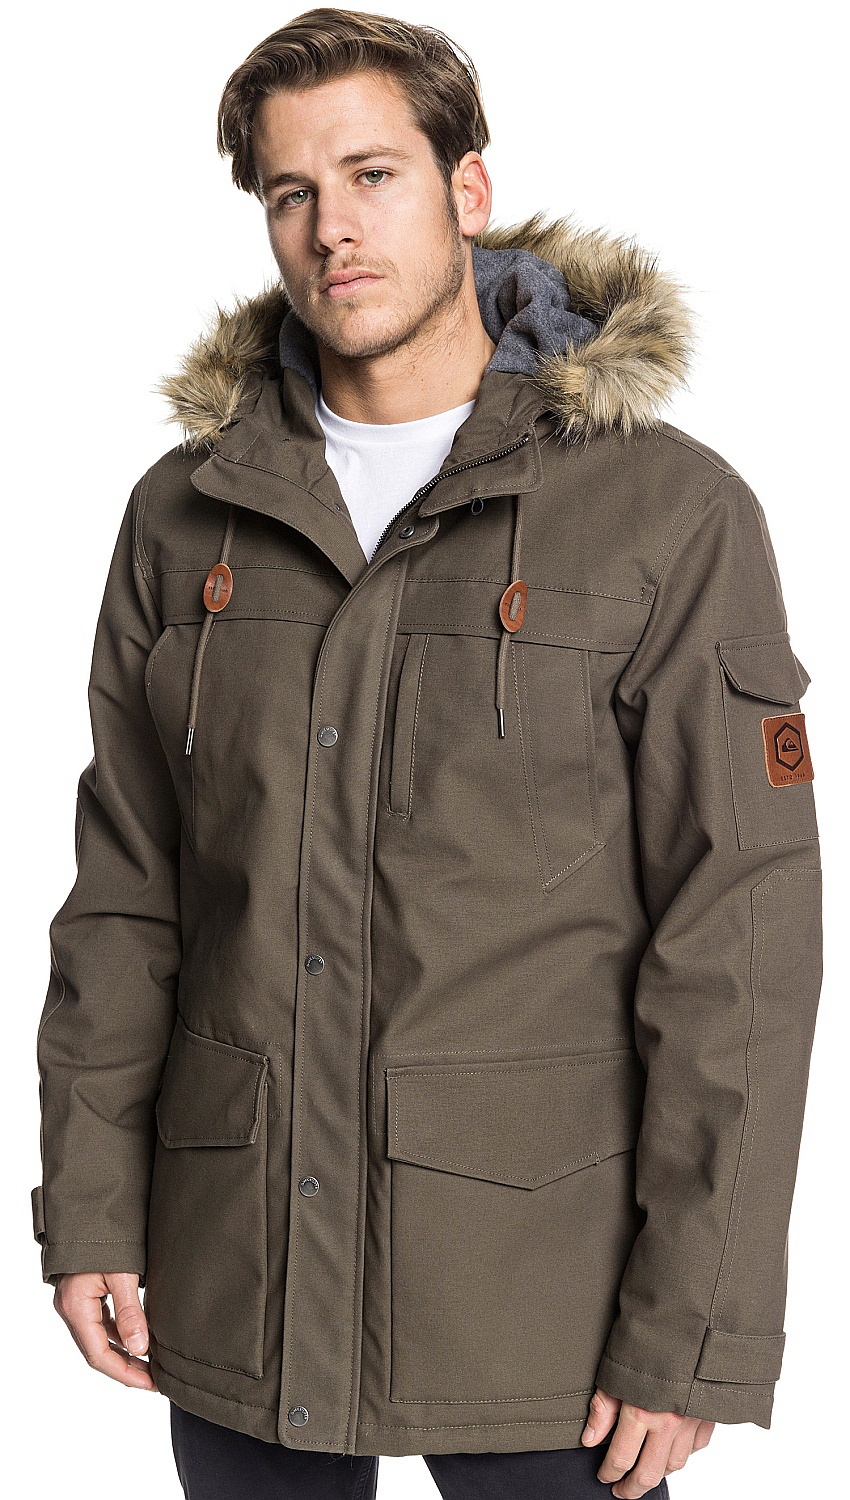 Качественные зимние куртки: ТОП-8 лучших брендов зимних курток для мужчин — Рейтинг 2021 года